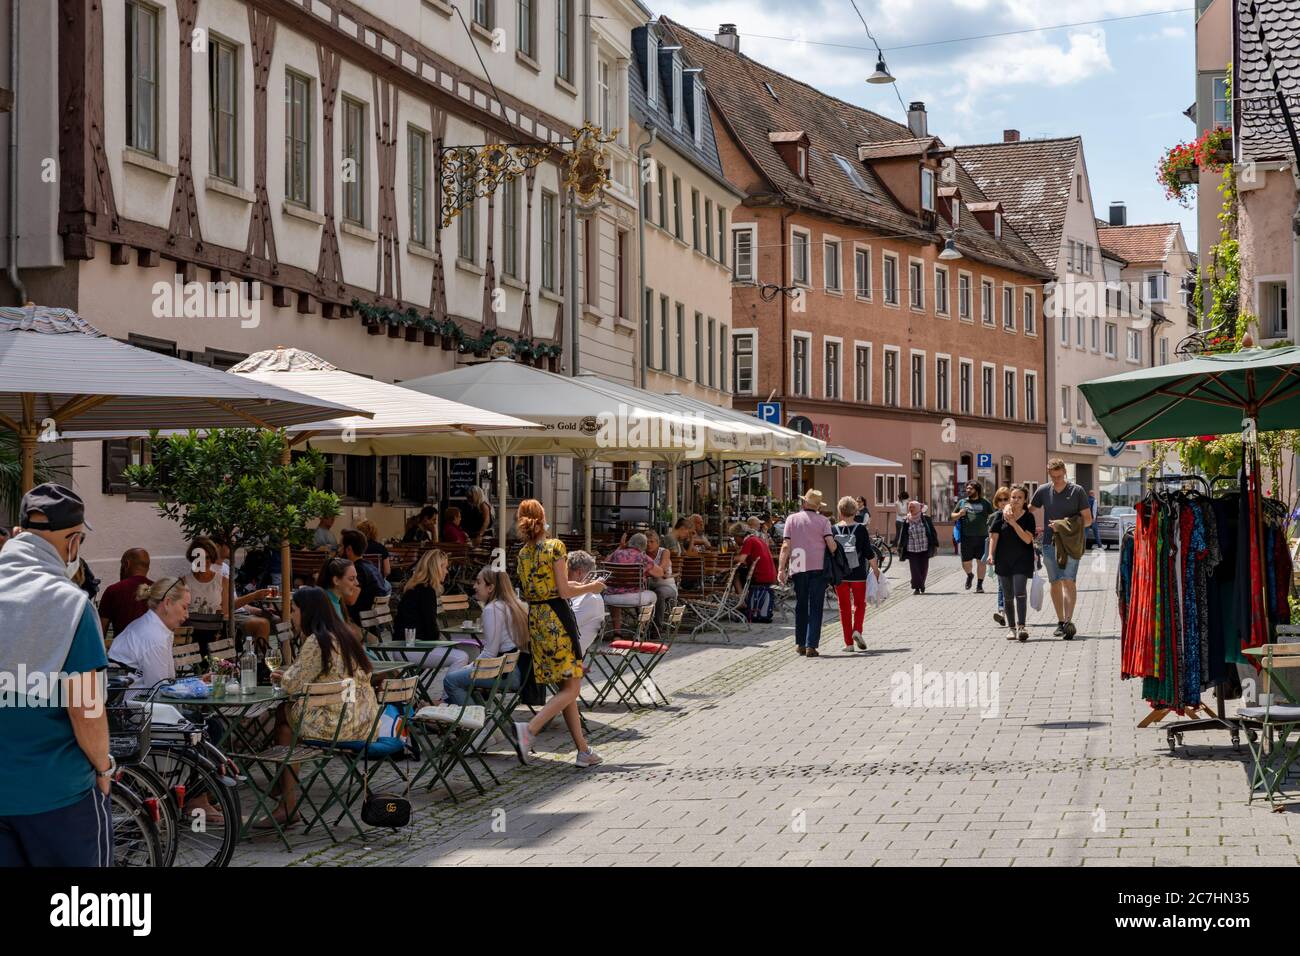 Ulm, BW / Alemania - 14 de julio de 2020: Restaurantes y bares en el centro histórico de la ciudad de Ulm en verano Foto de stock